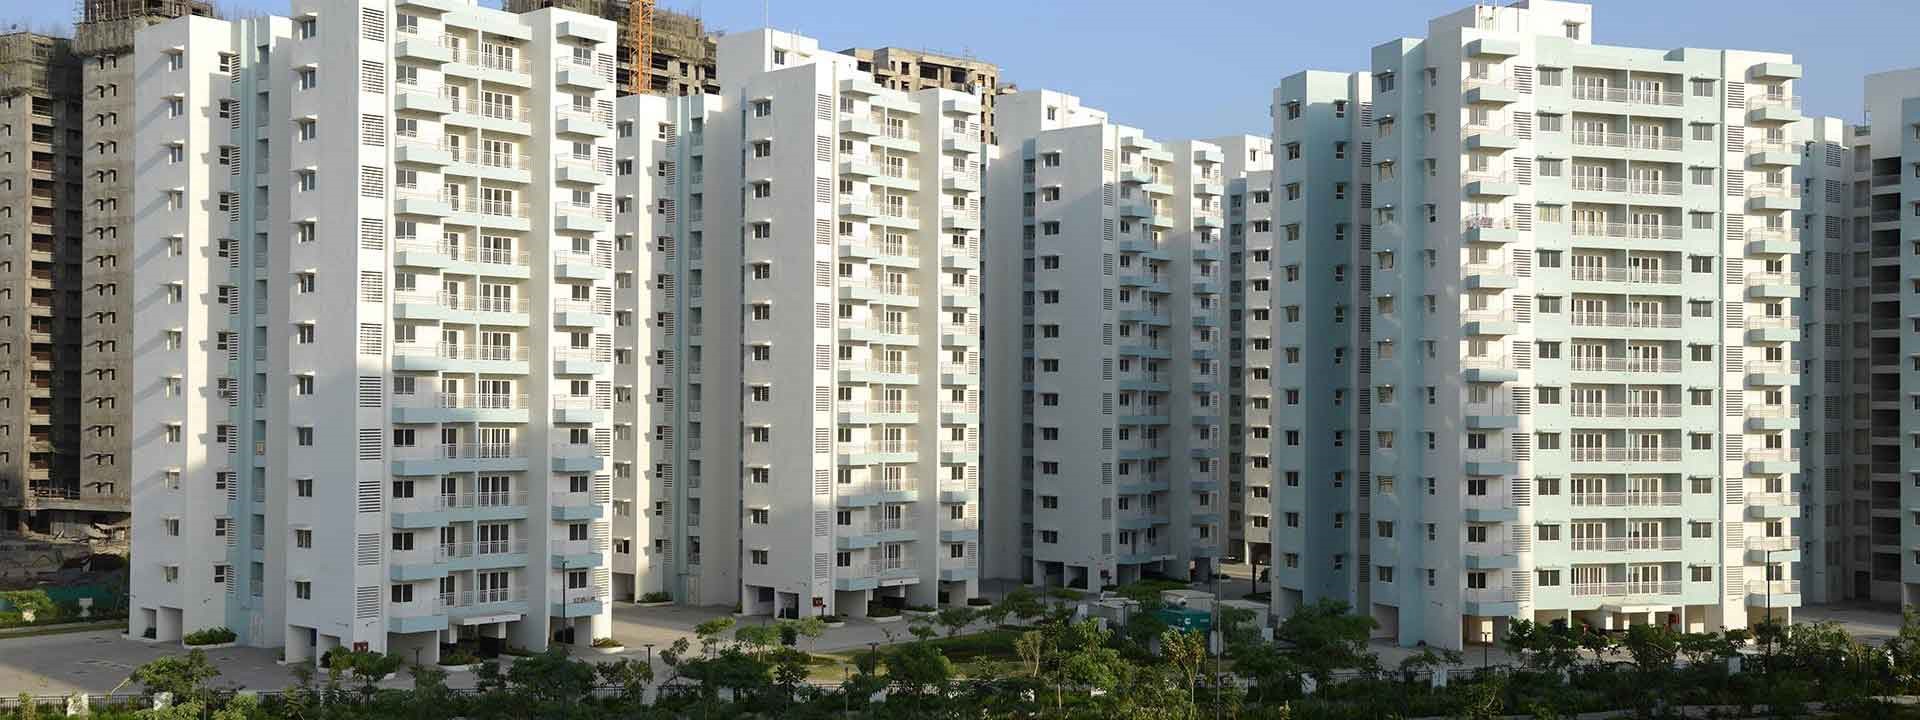 Godrej Garden City in Ahmedabad- L&T Construction